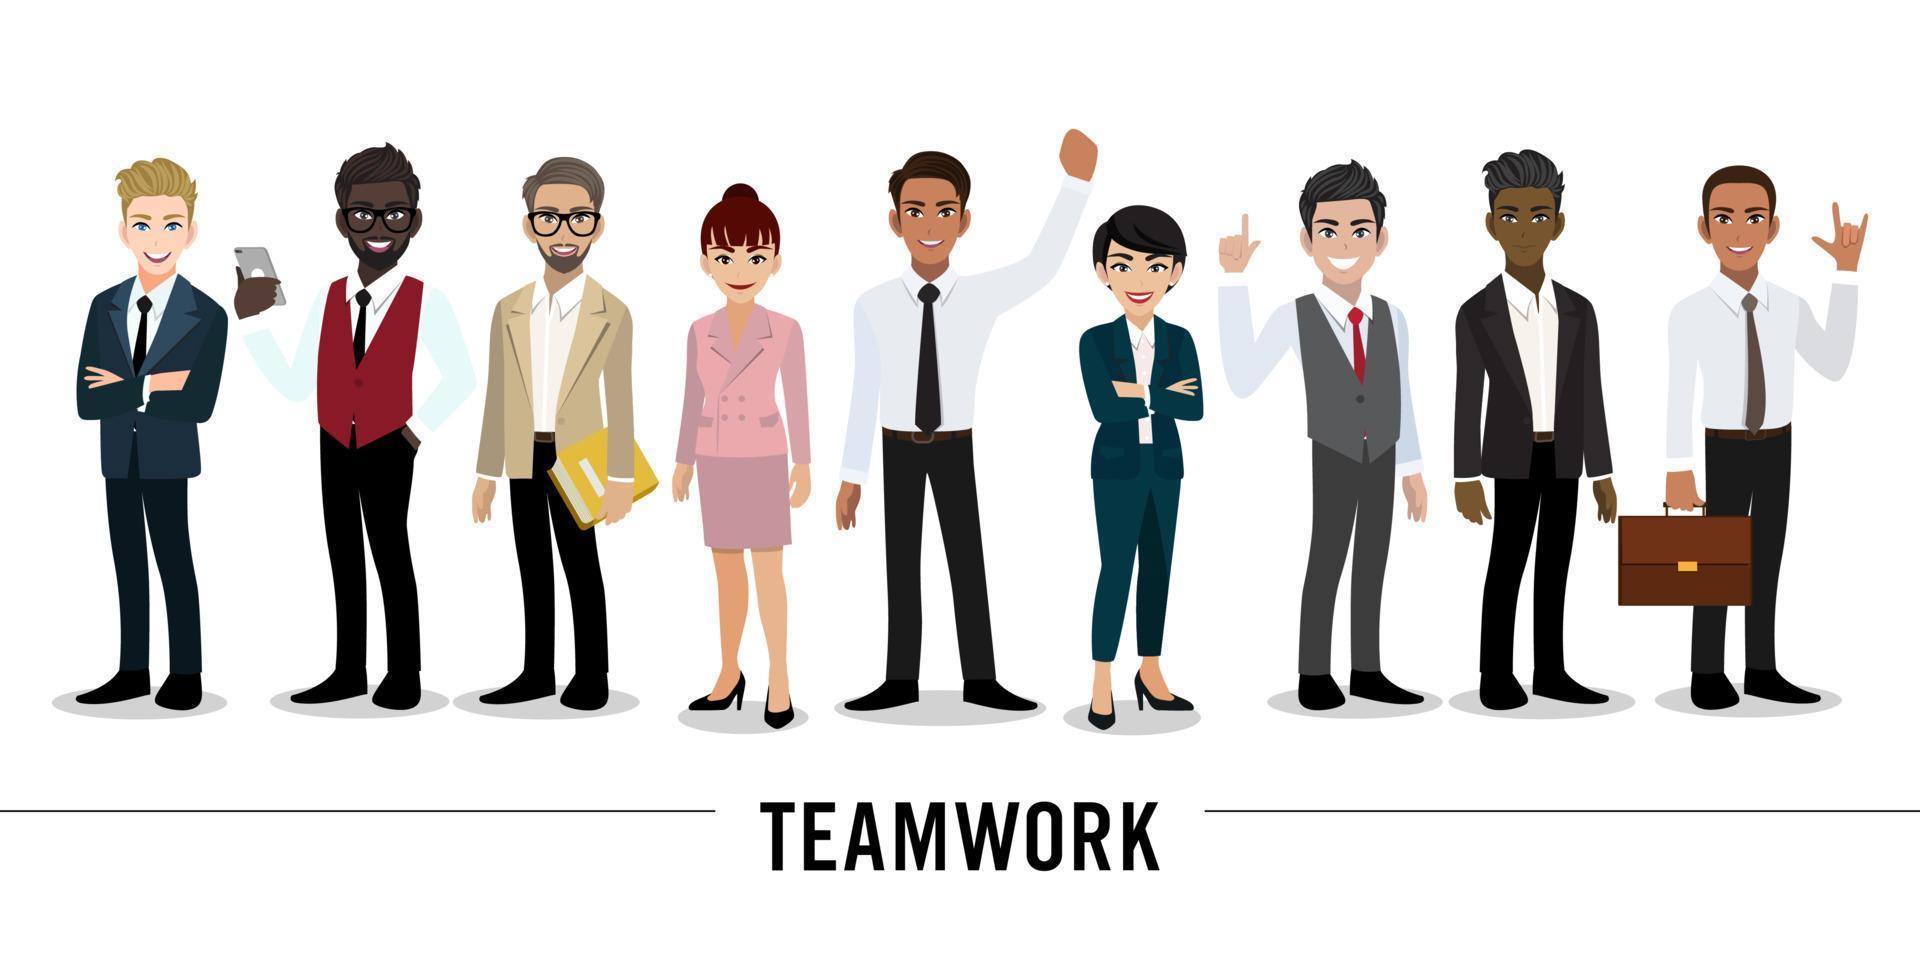 personaggio dei cartoni animati di uomo d'affari e imprenditrice su sfondo bianco. progettazione del concetto di lavoro di squadra. illustrazione vettoriale piatta.